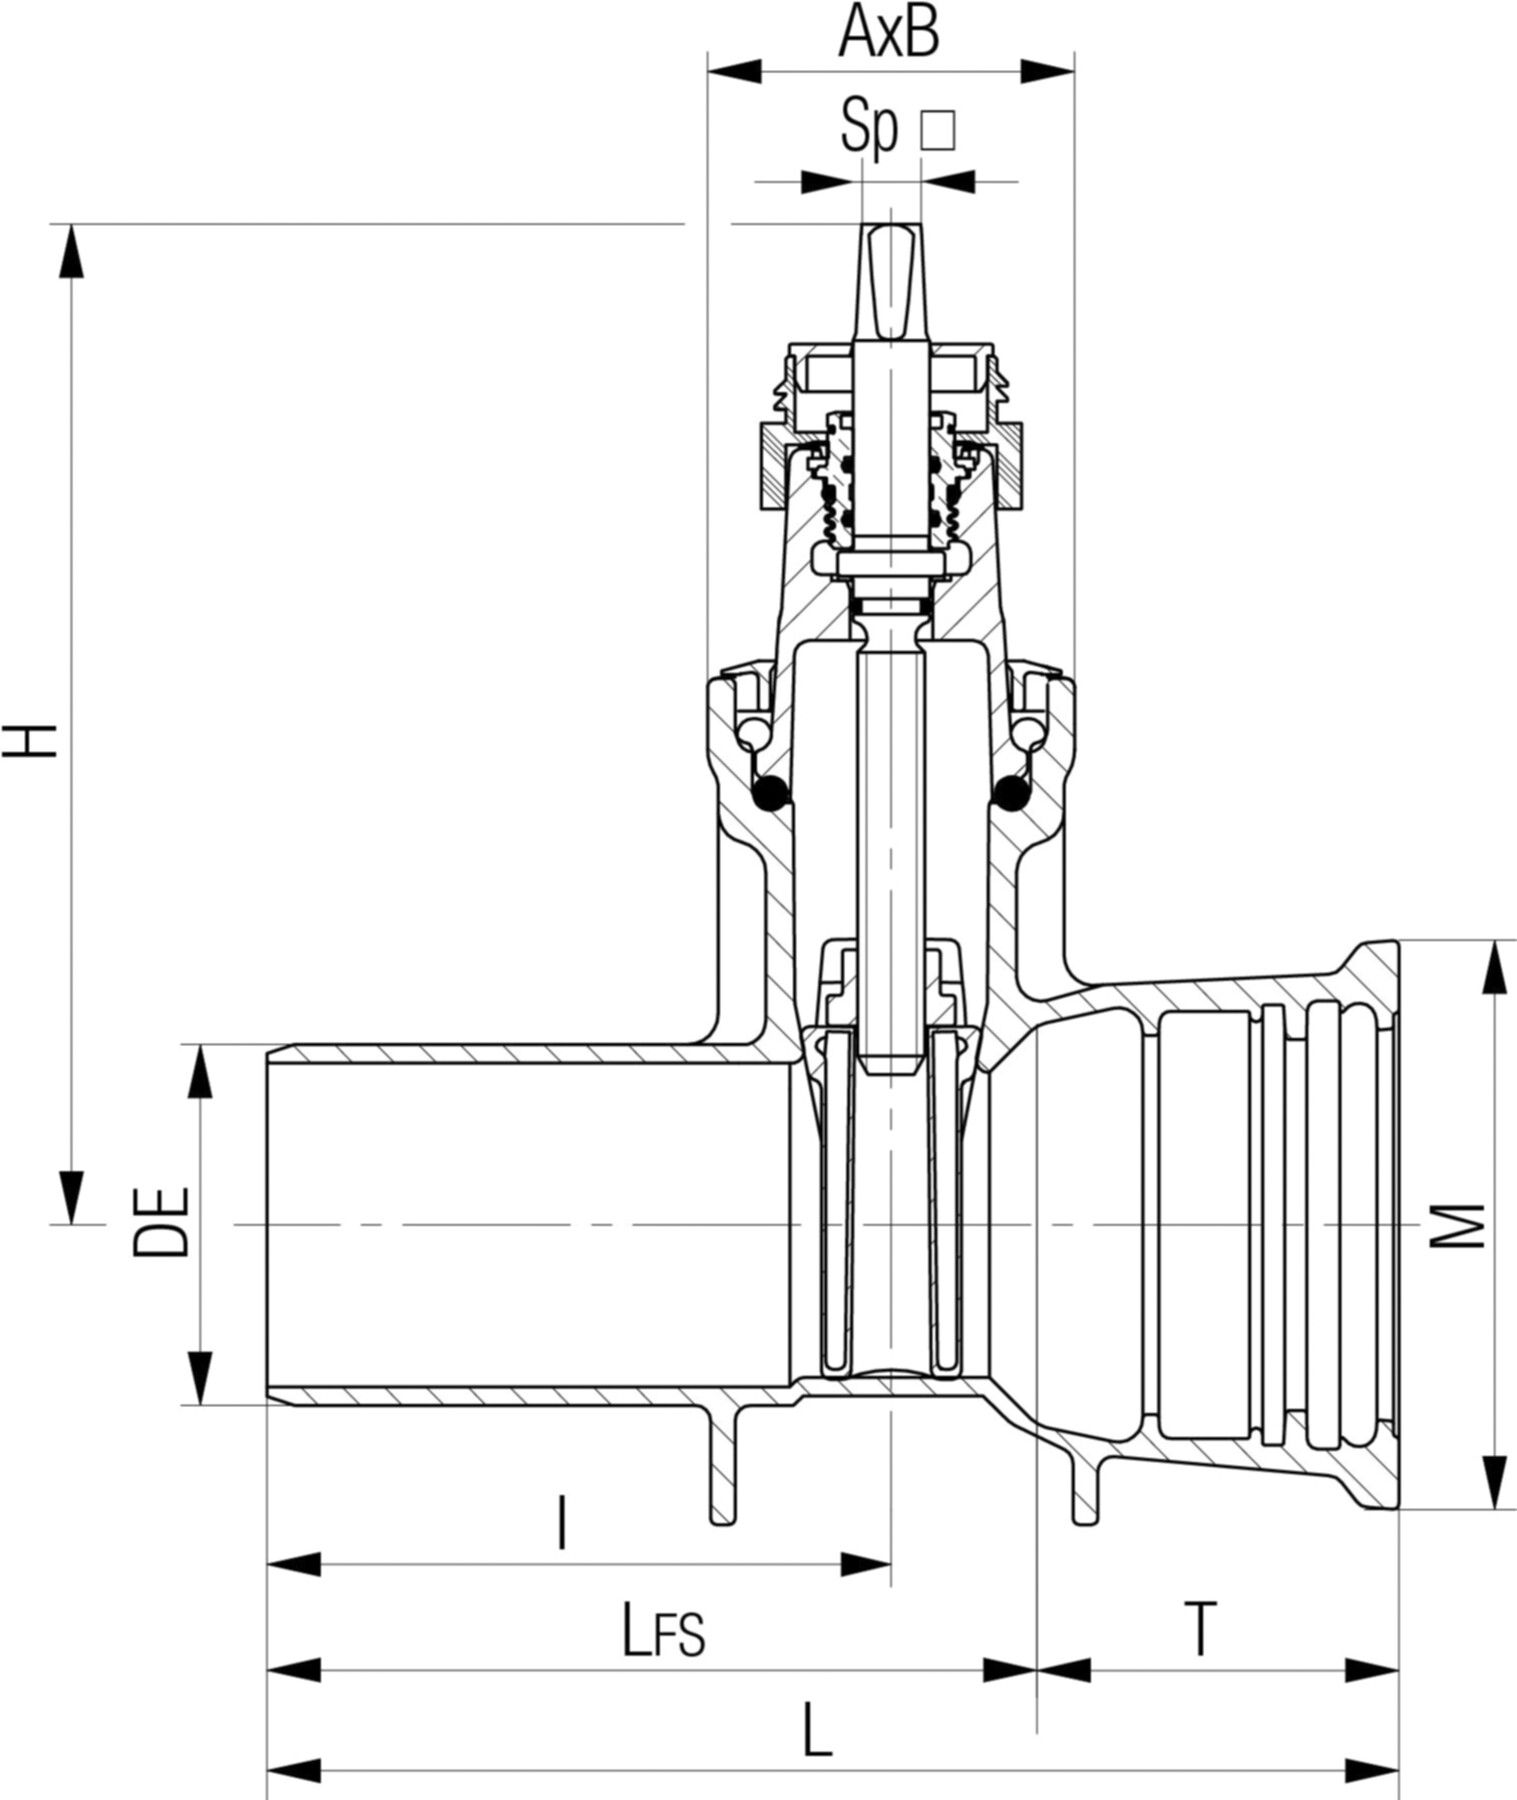 Schieber Steckmuffe/Spitzend Fig. 5054 DN 150 - Von Roll Armaturen